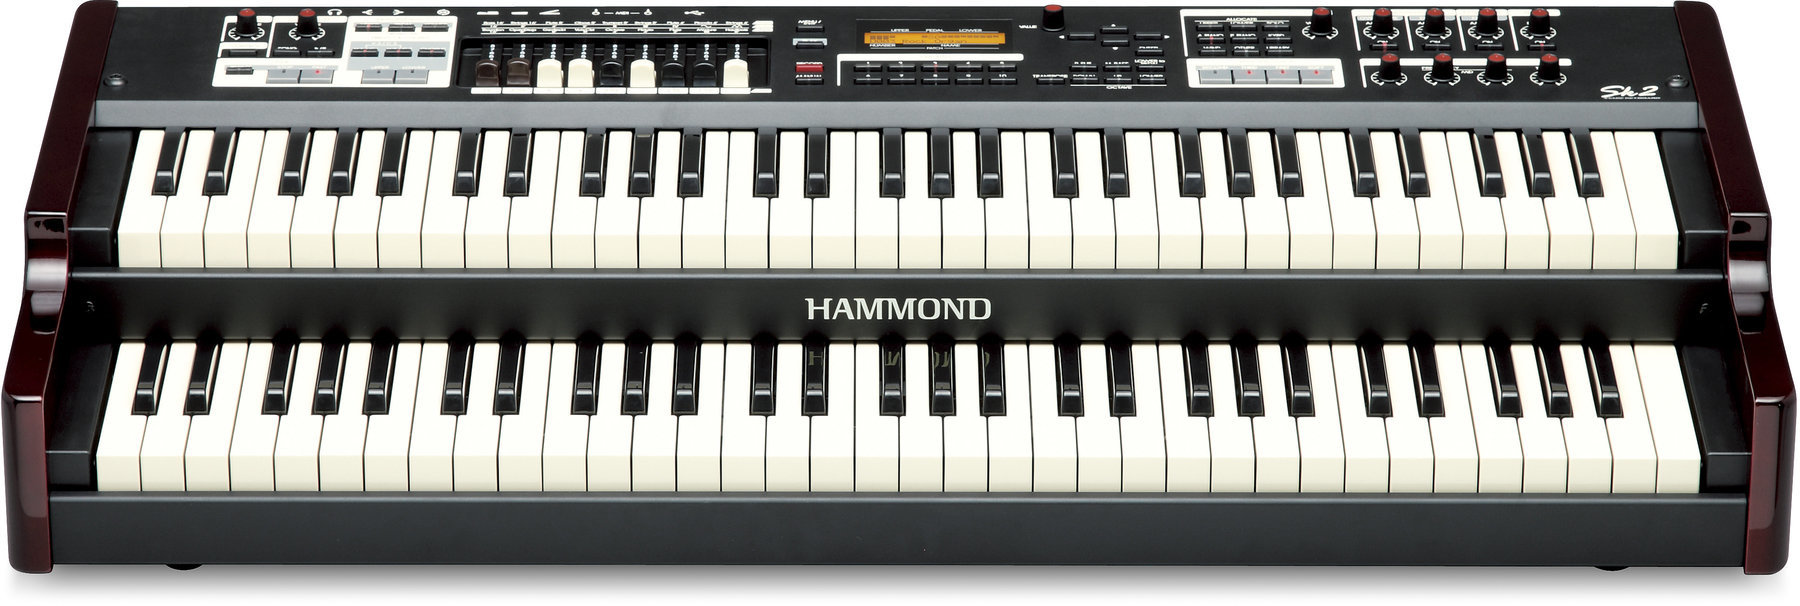 Elektroniskt organ Hammond SK2